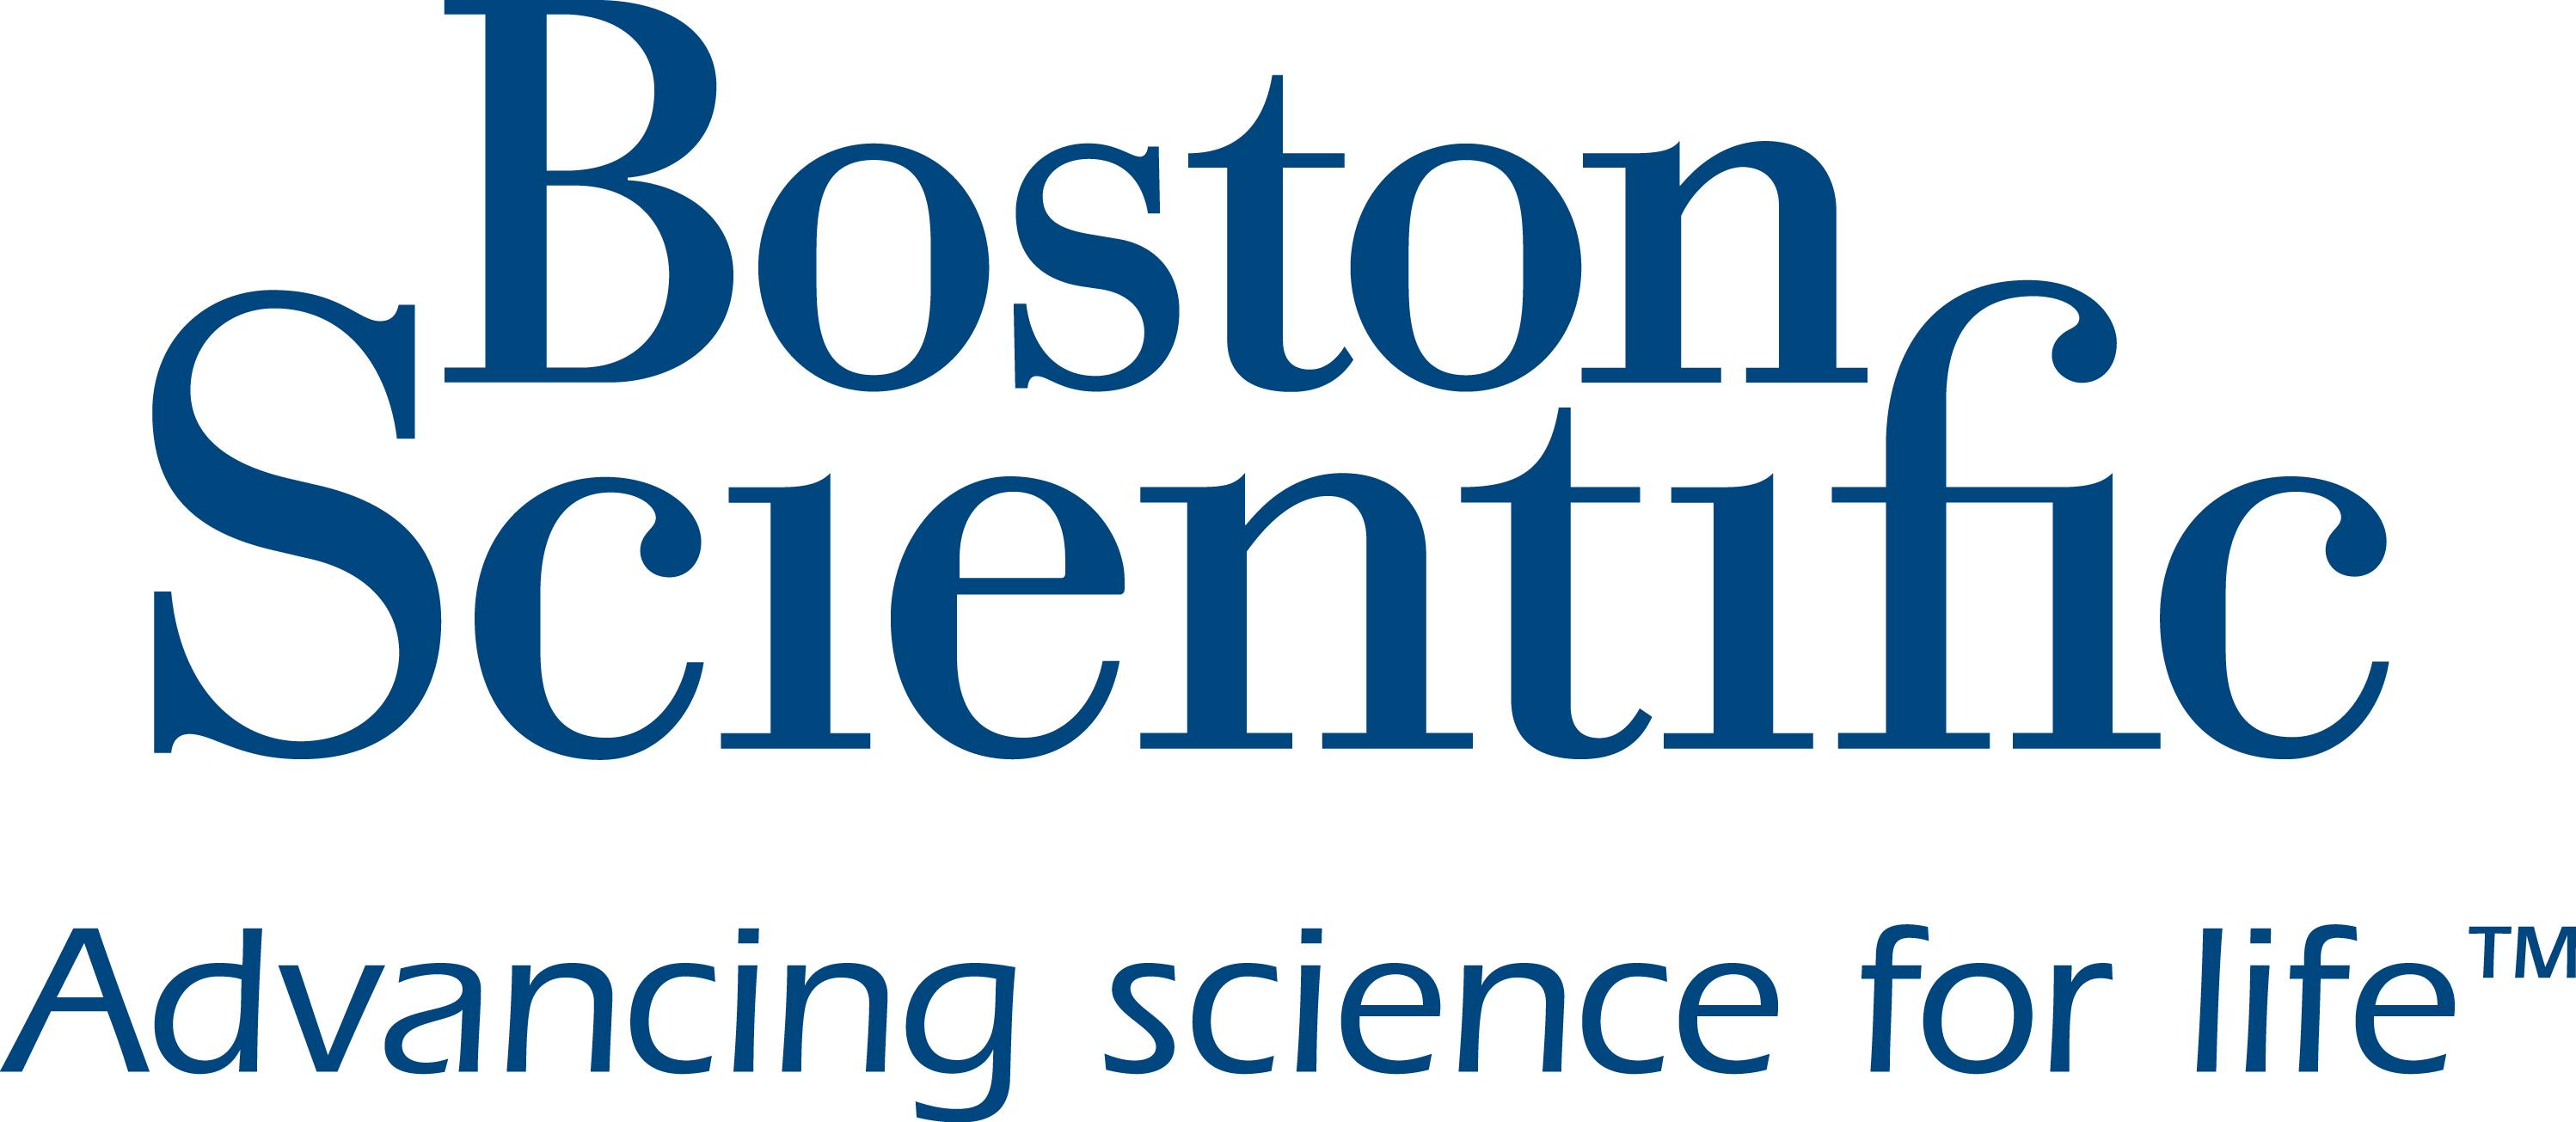 Boston Scientific. Advancing science for life. Trademark.